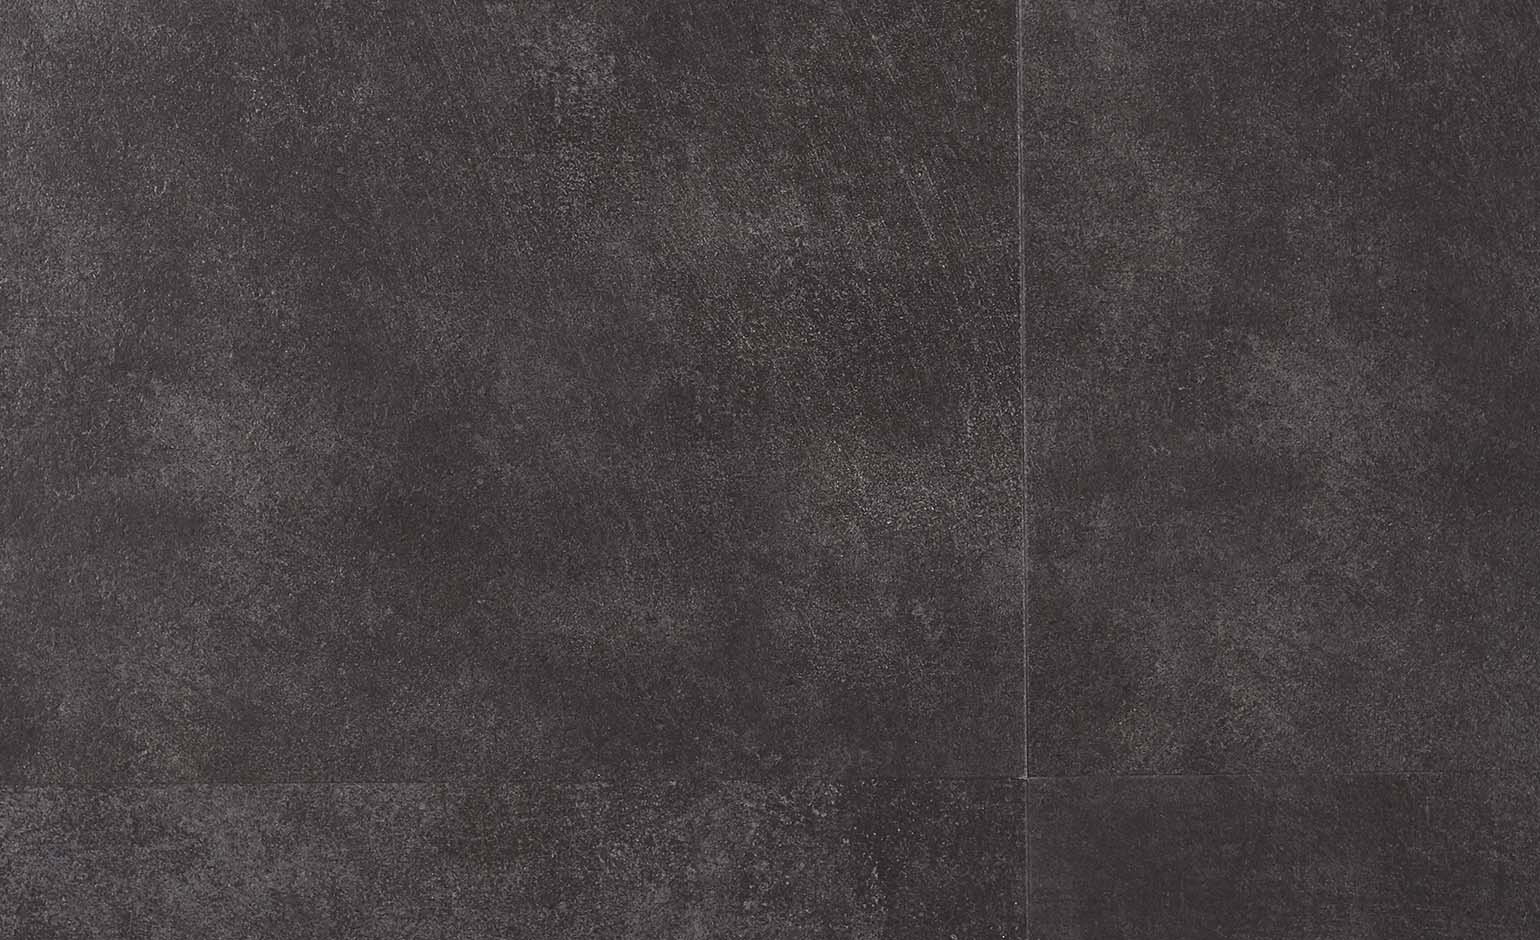 Sol vinyle VIRTUO CLIC NEW DALLE Gerflor, Béton gris foncé, dalle 39.10 x 72.90 cm